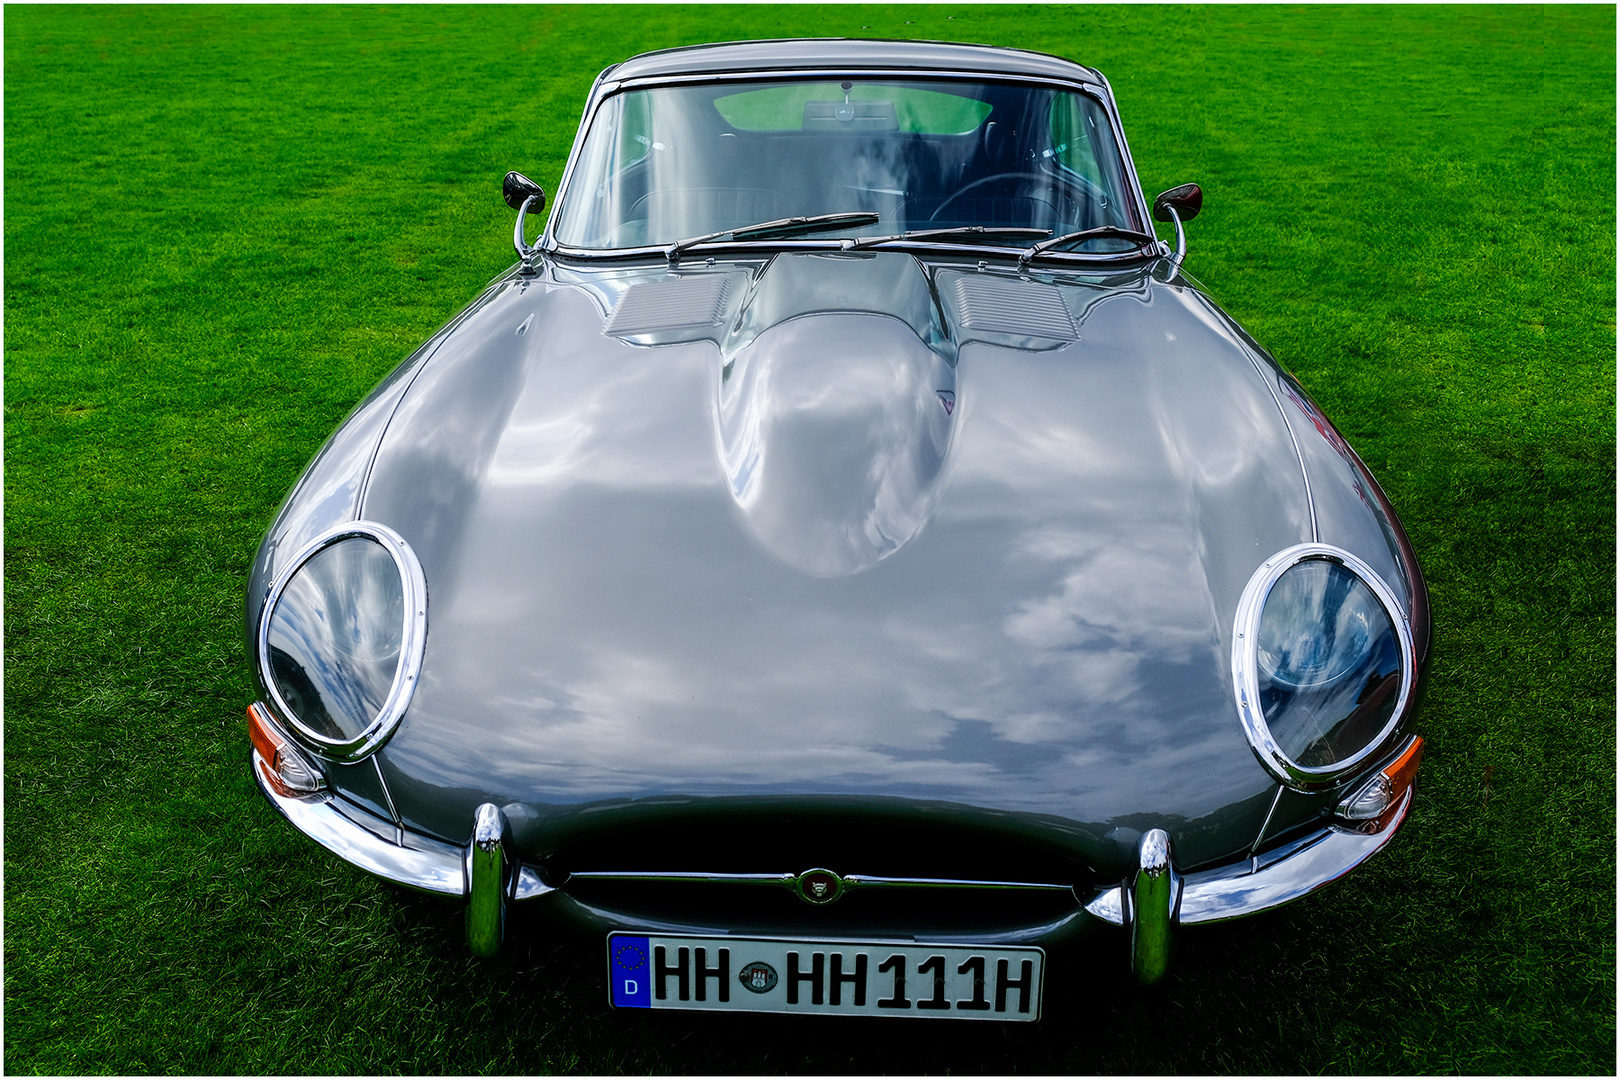 60 Jahre alt: Jaguar E-Type